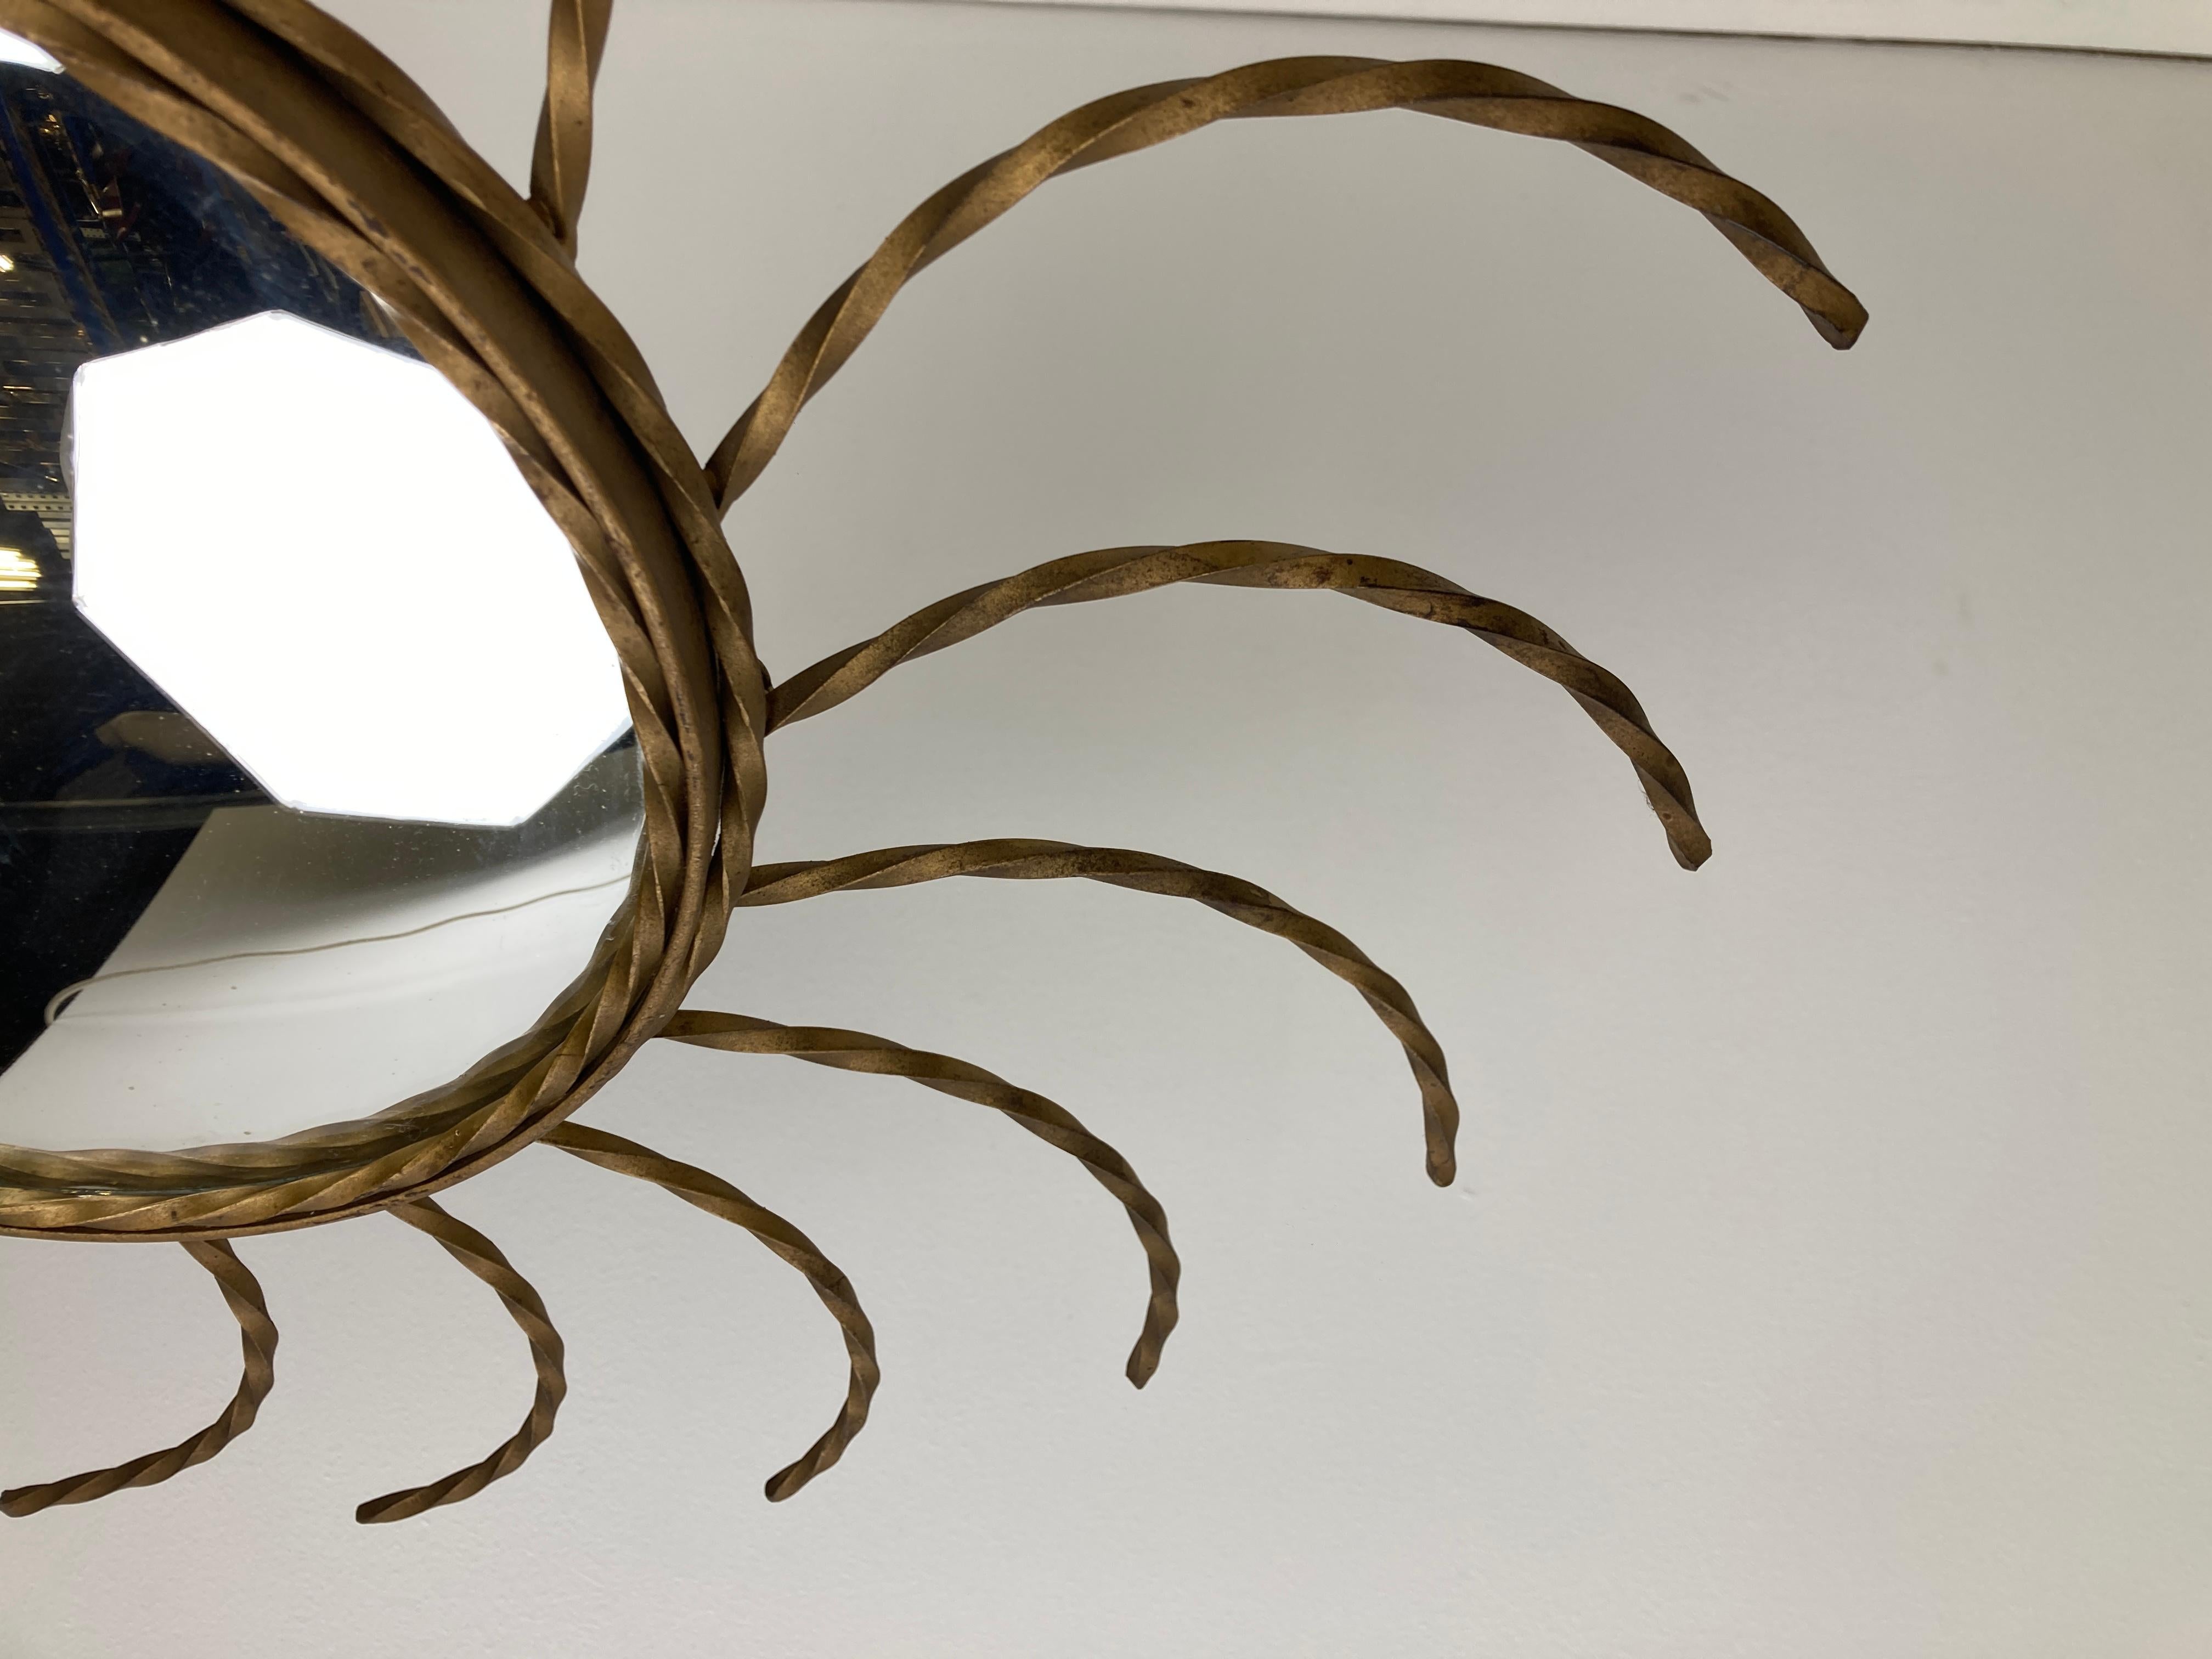 Miroir doré en forme de soleil du milieu du siècle avec verre convexe.

Ce miroir s'adapte à la plupart des intérieurs et constitue un complément parfait pour un intérieur de style régence.

Bon état.

France - années 1970

Diamètre :